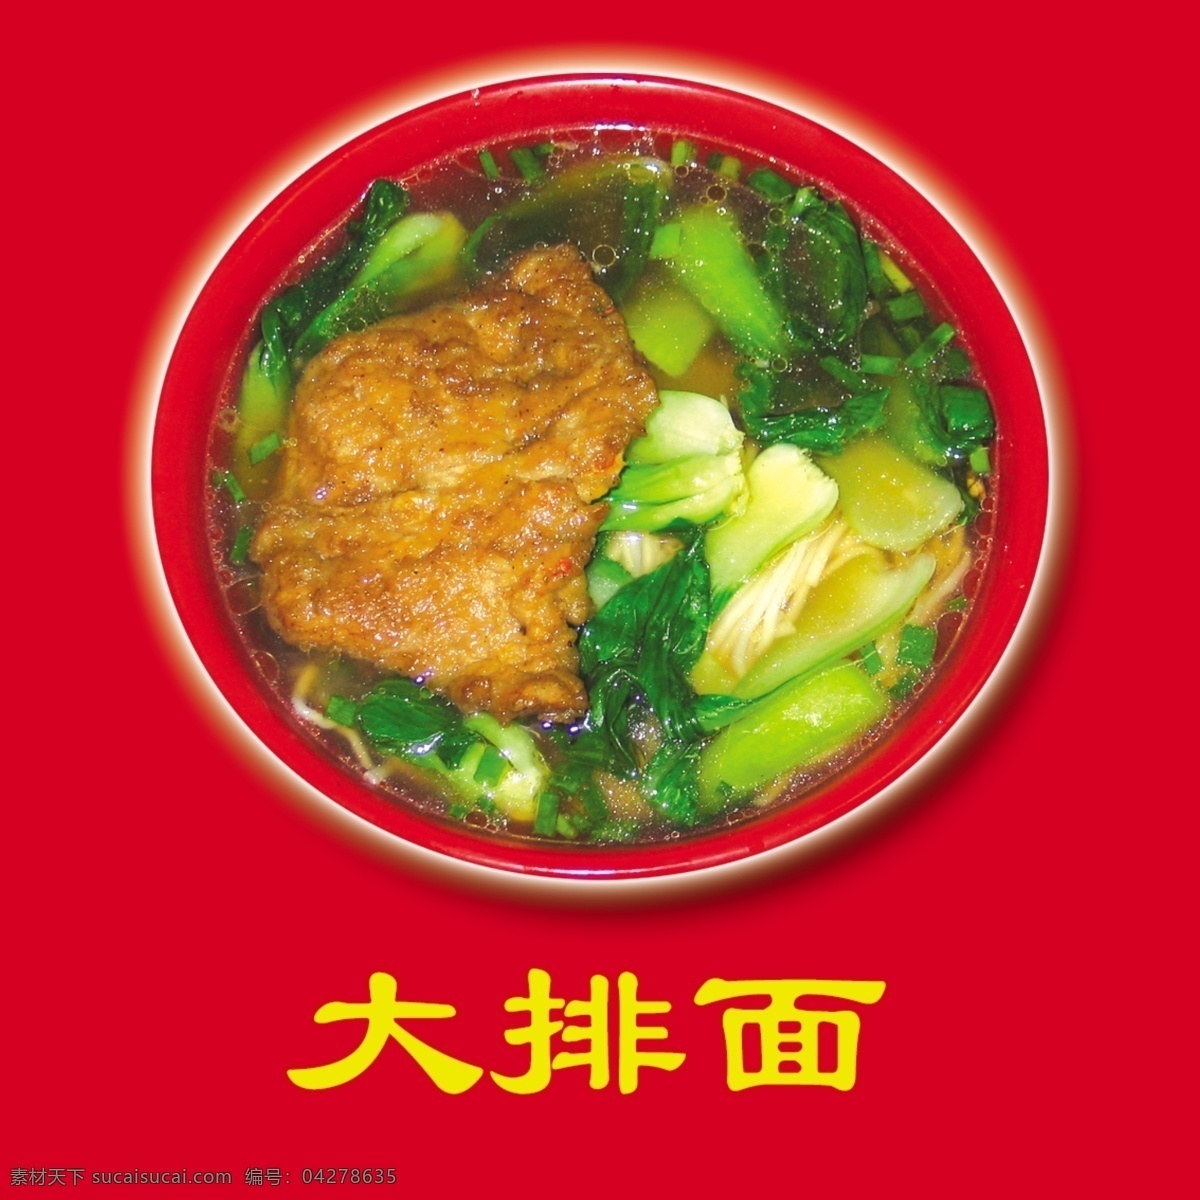 沙县小吃 传统小吃 美食 大排面 菜单菜谱 广告设计模板 源文件